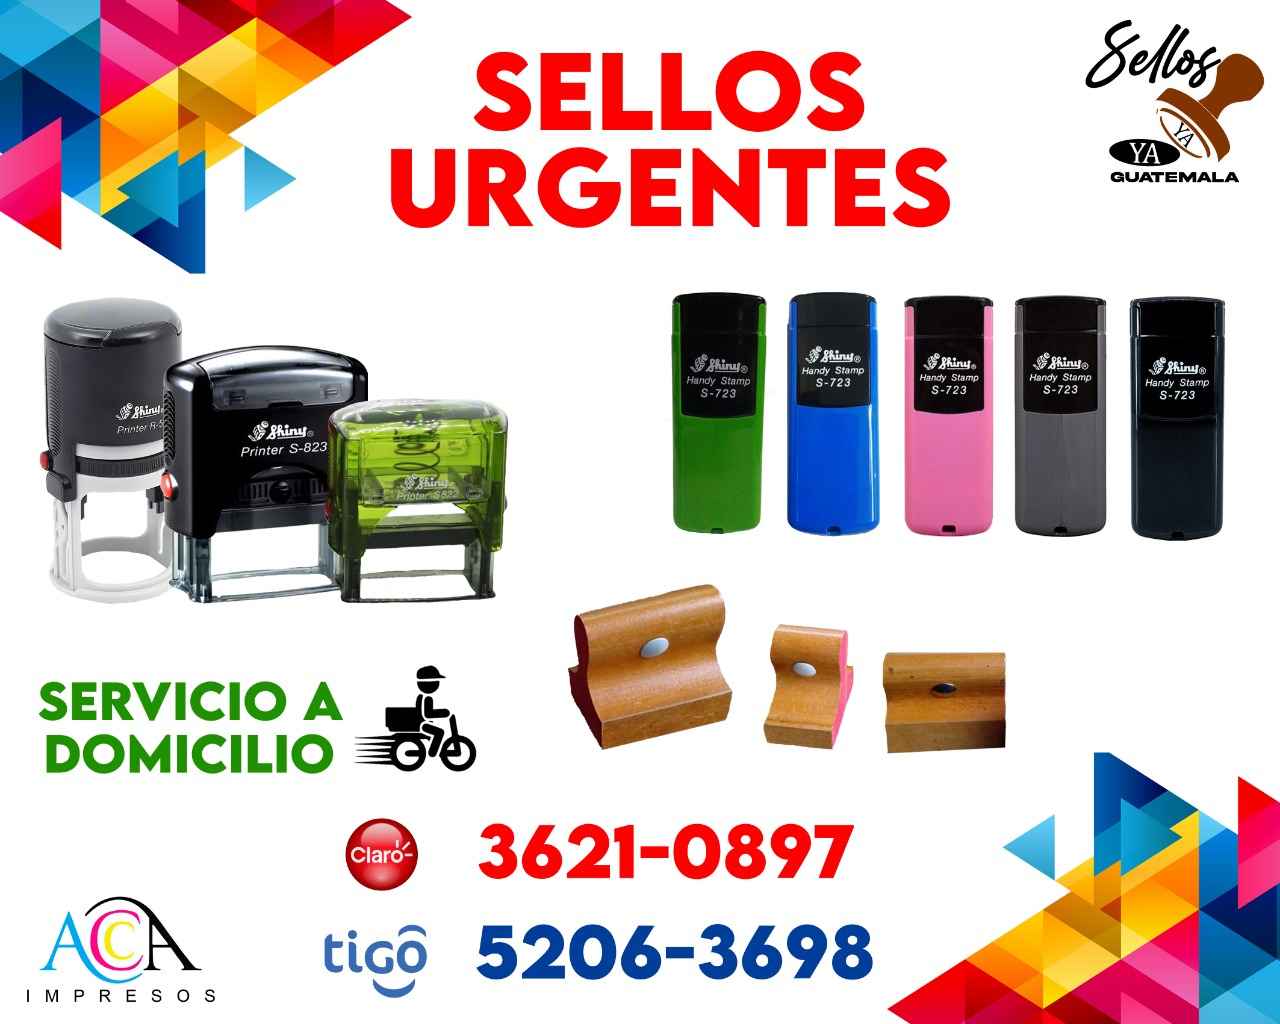 SELLOS DE HULE URGENTES
3621 0897 Y 5206 3698